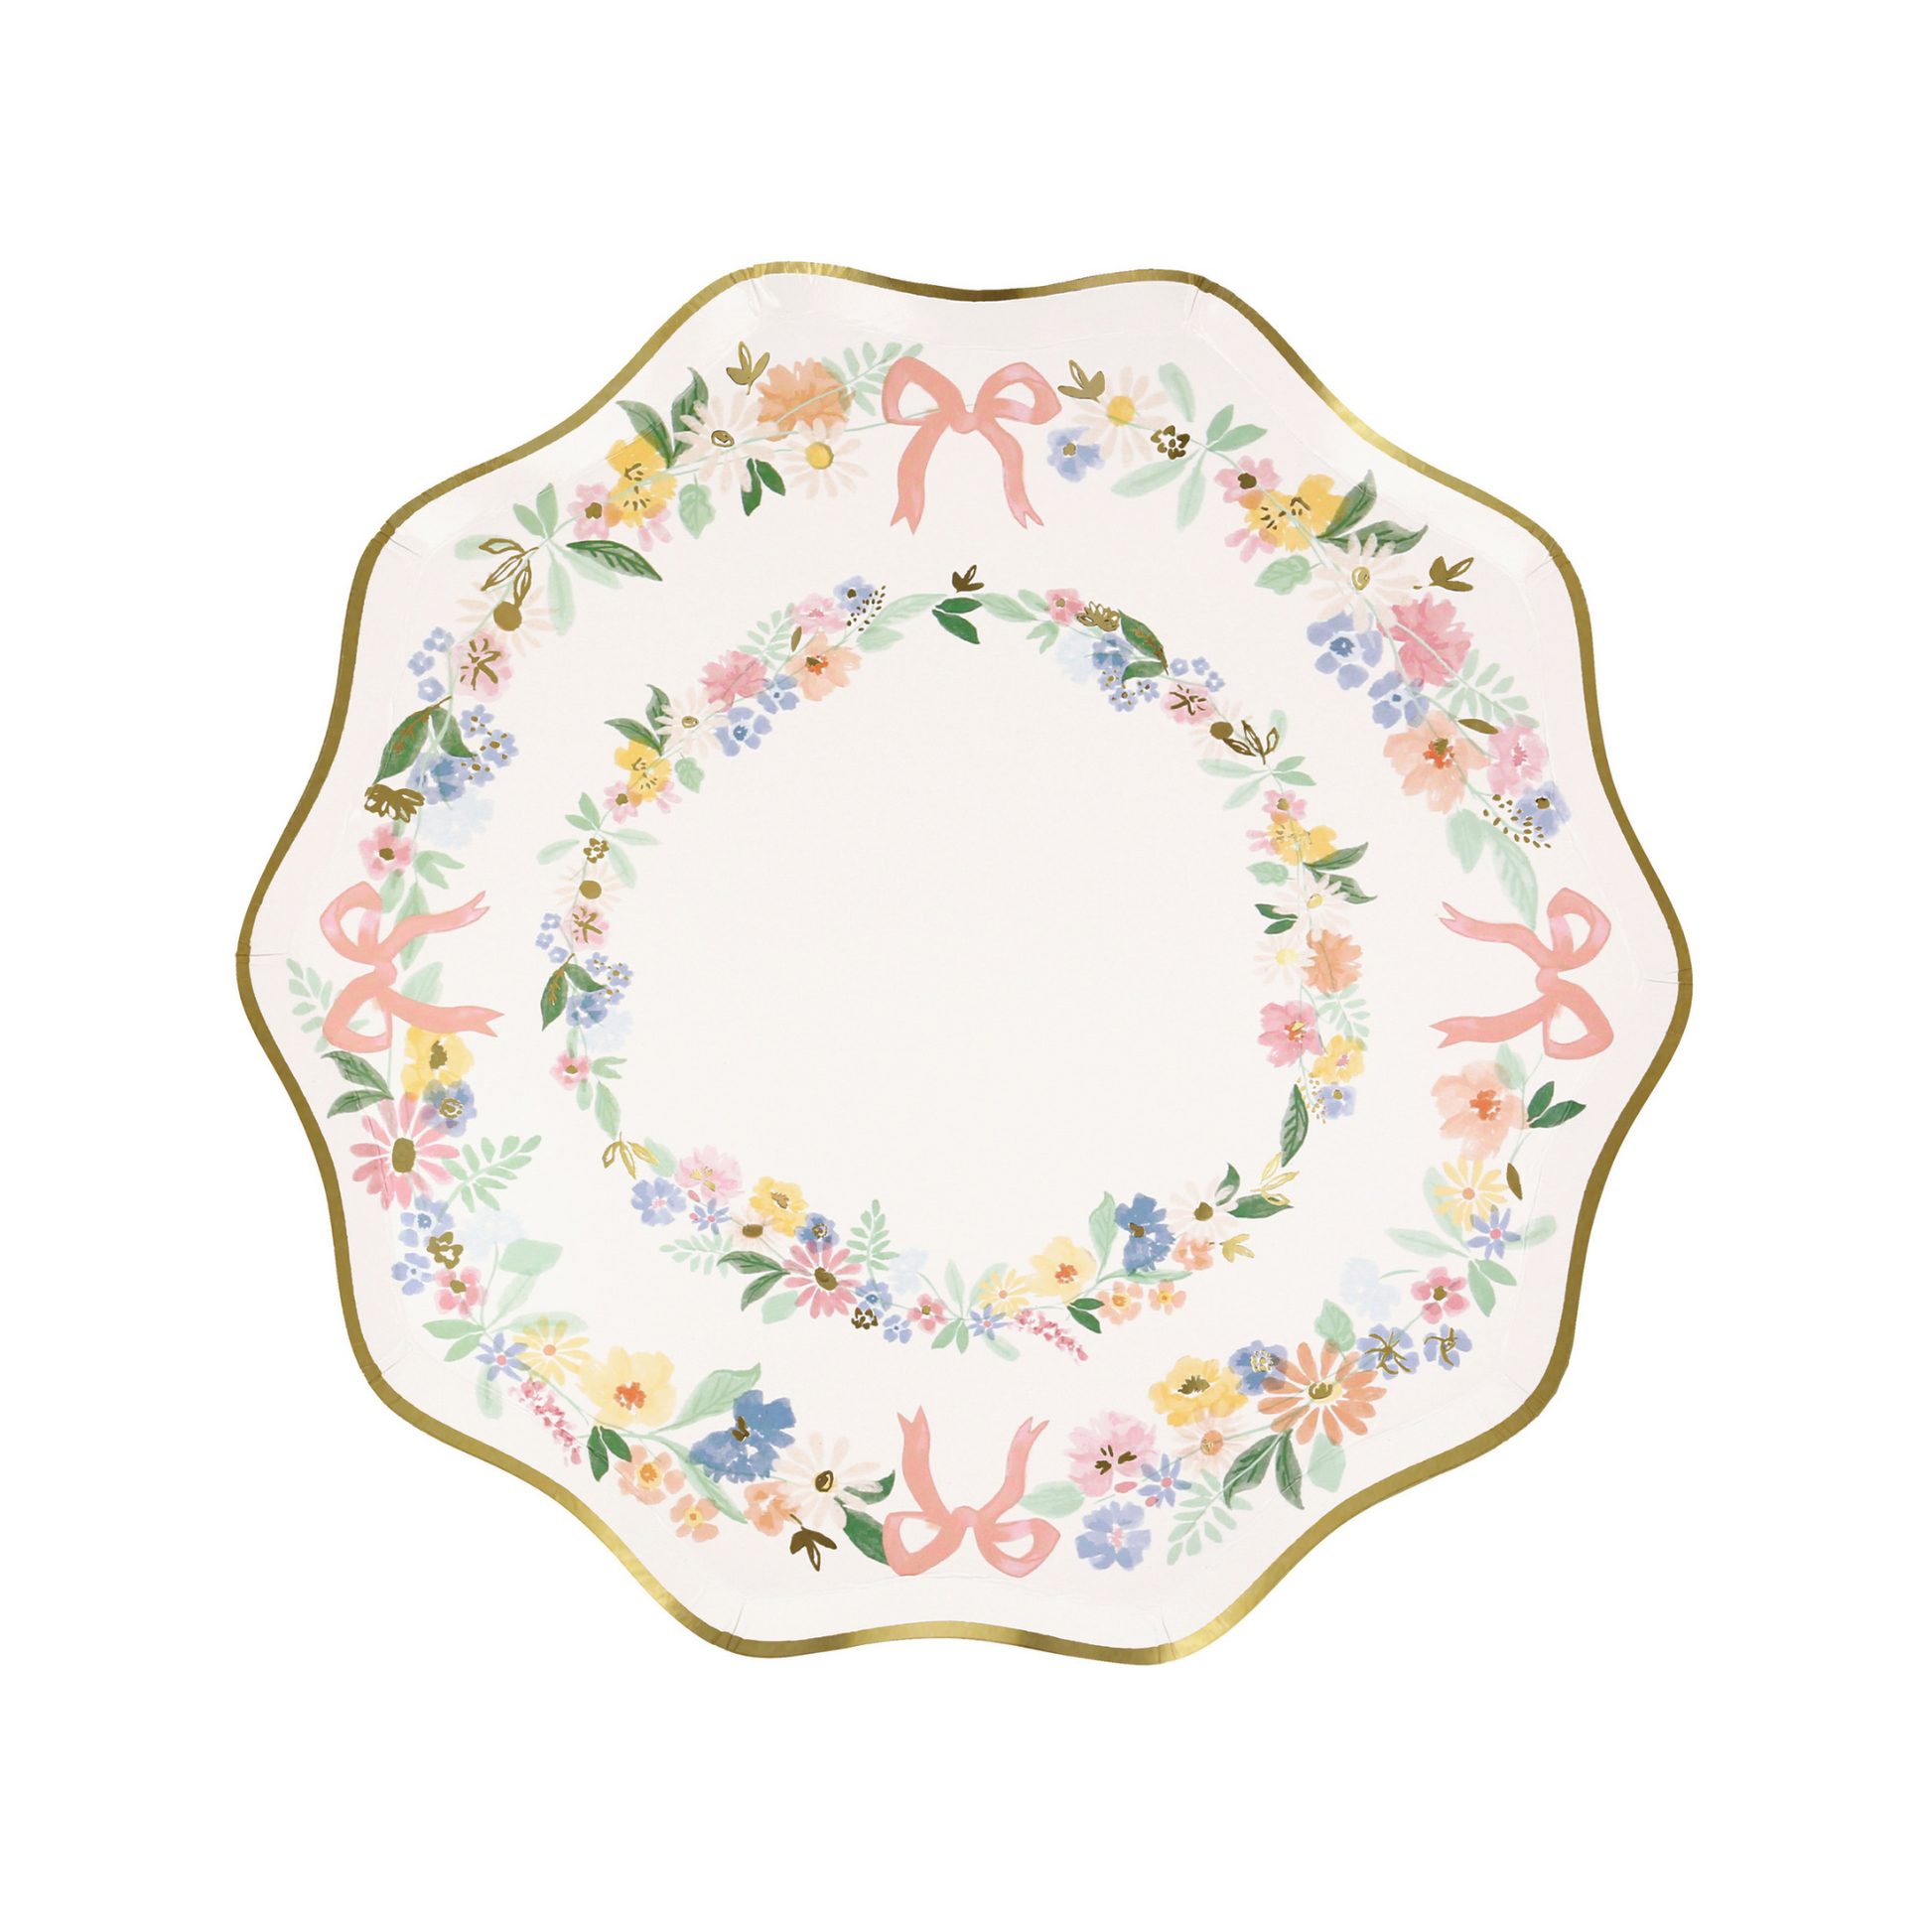 elegant floral side plates by meri meri